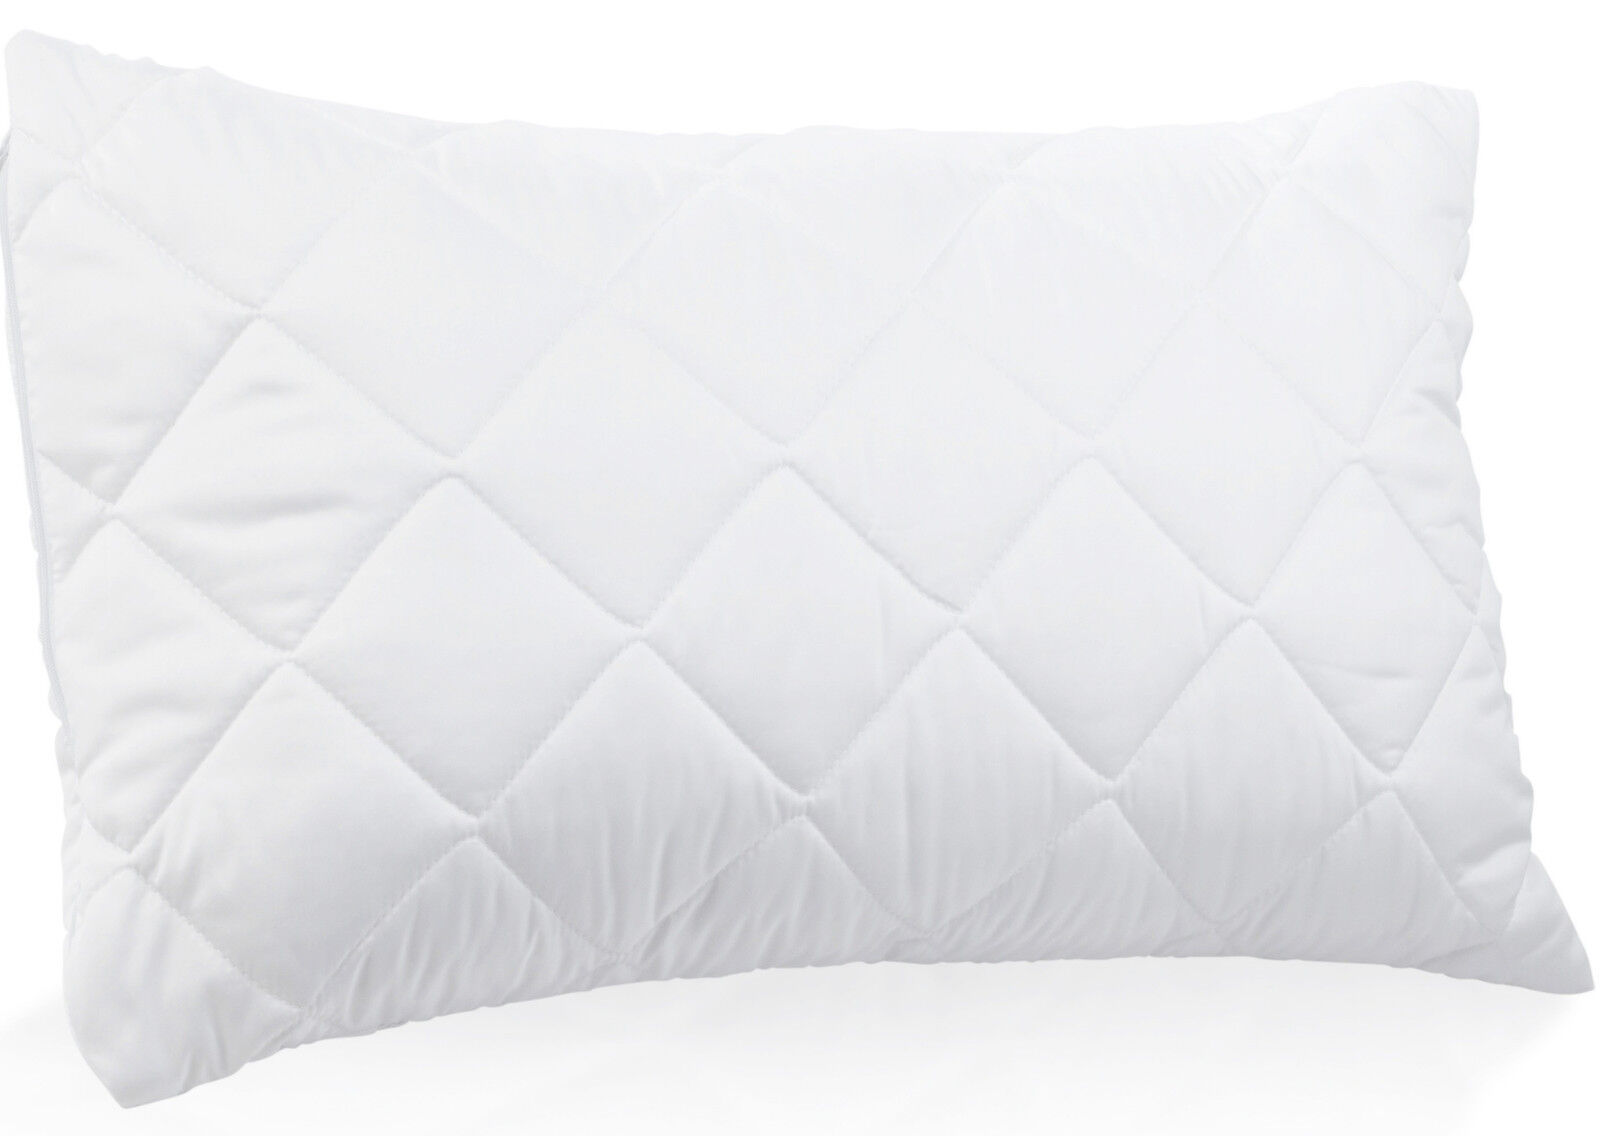 White microfiber pillows (1300 grams)